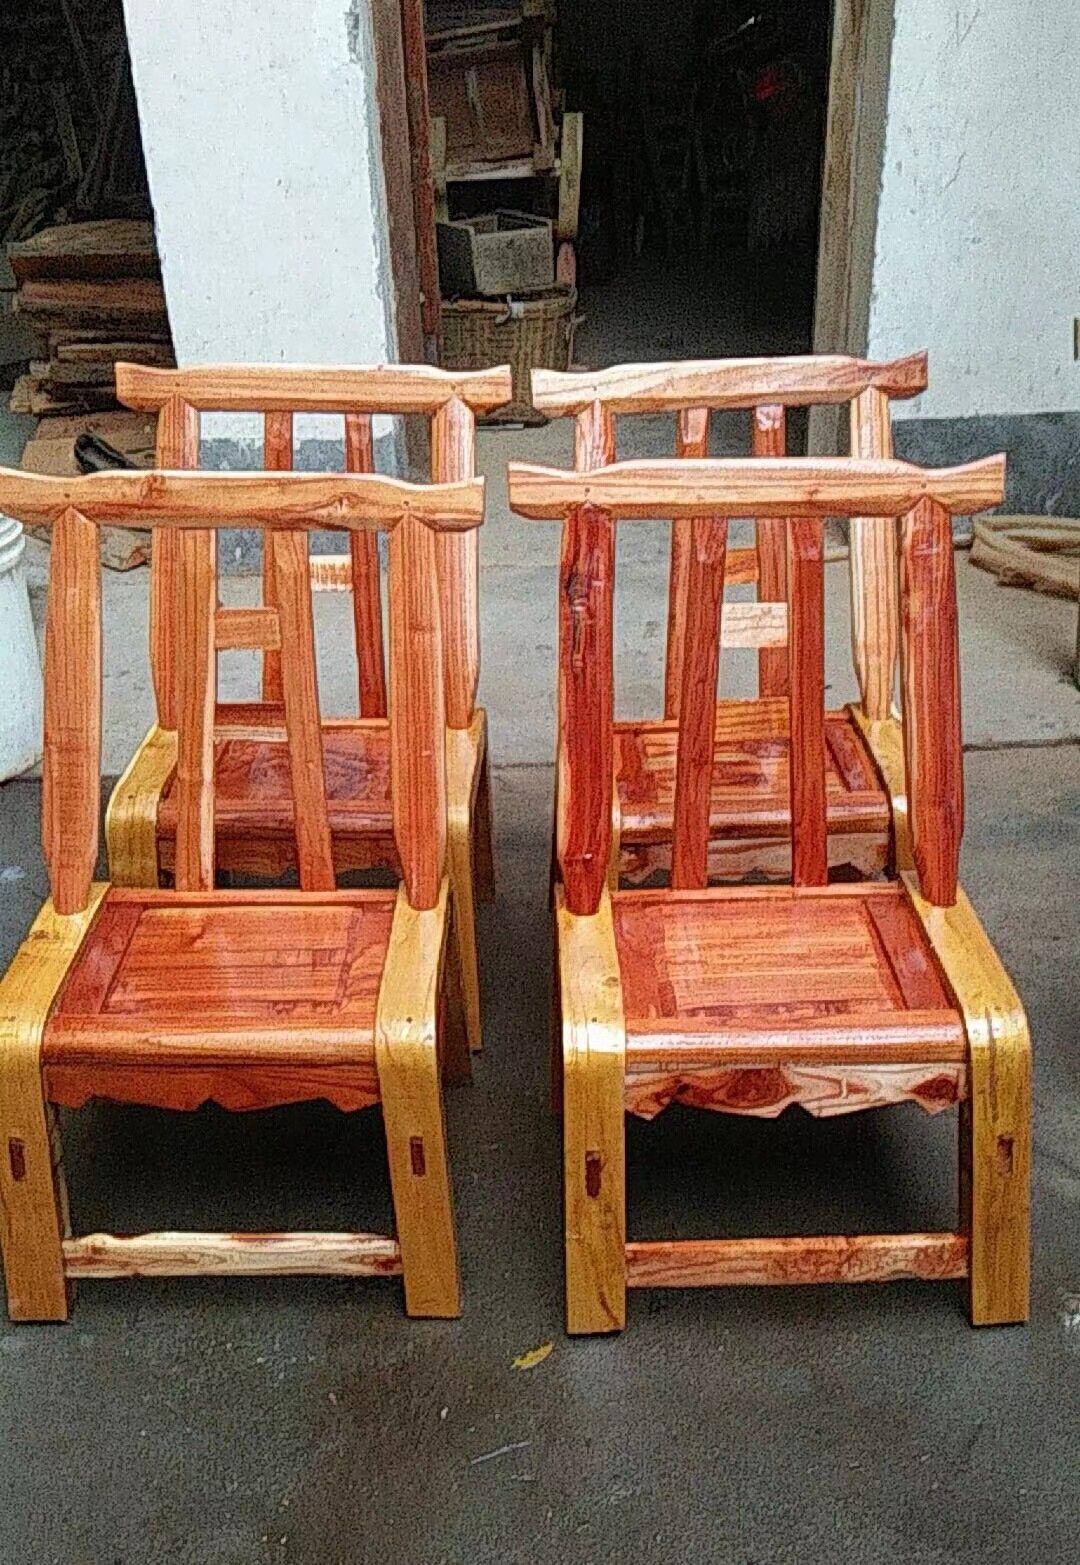 [板凳批发]板凳 纯手工老式木质名家凳子/椅子,结实